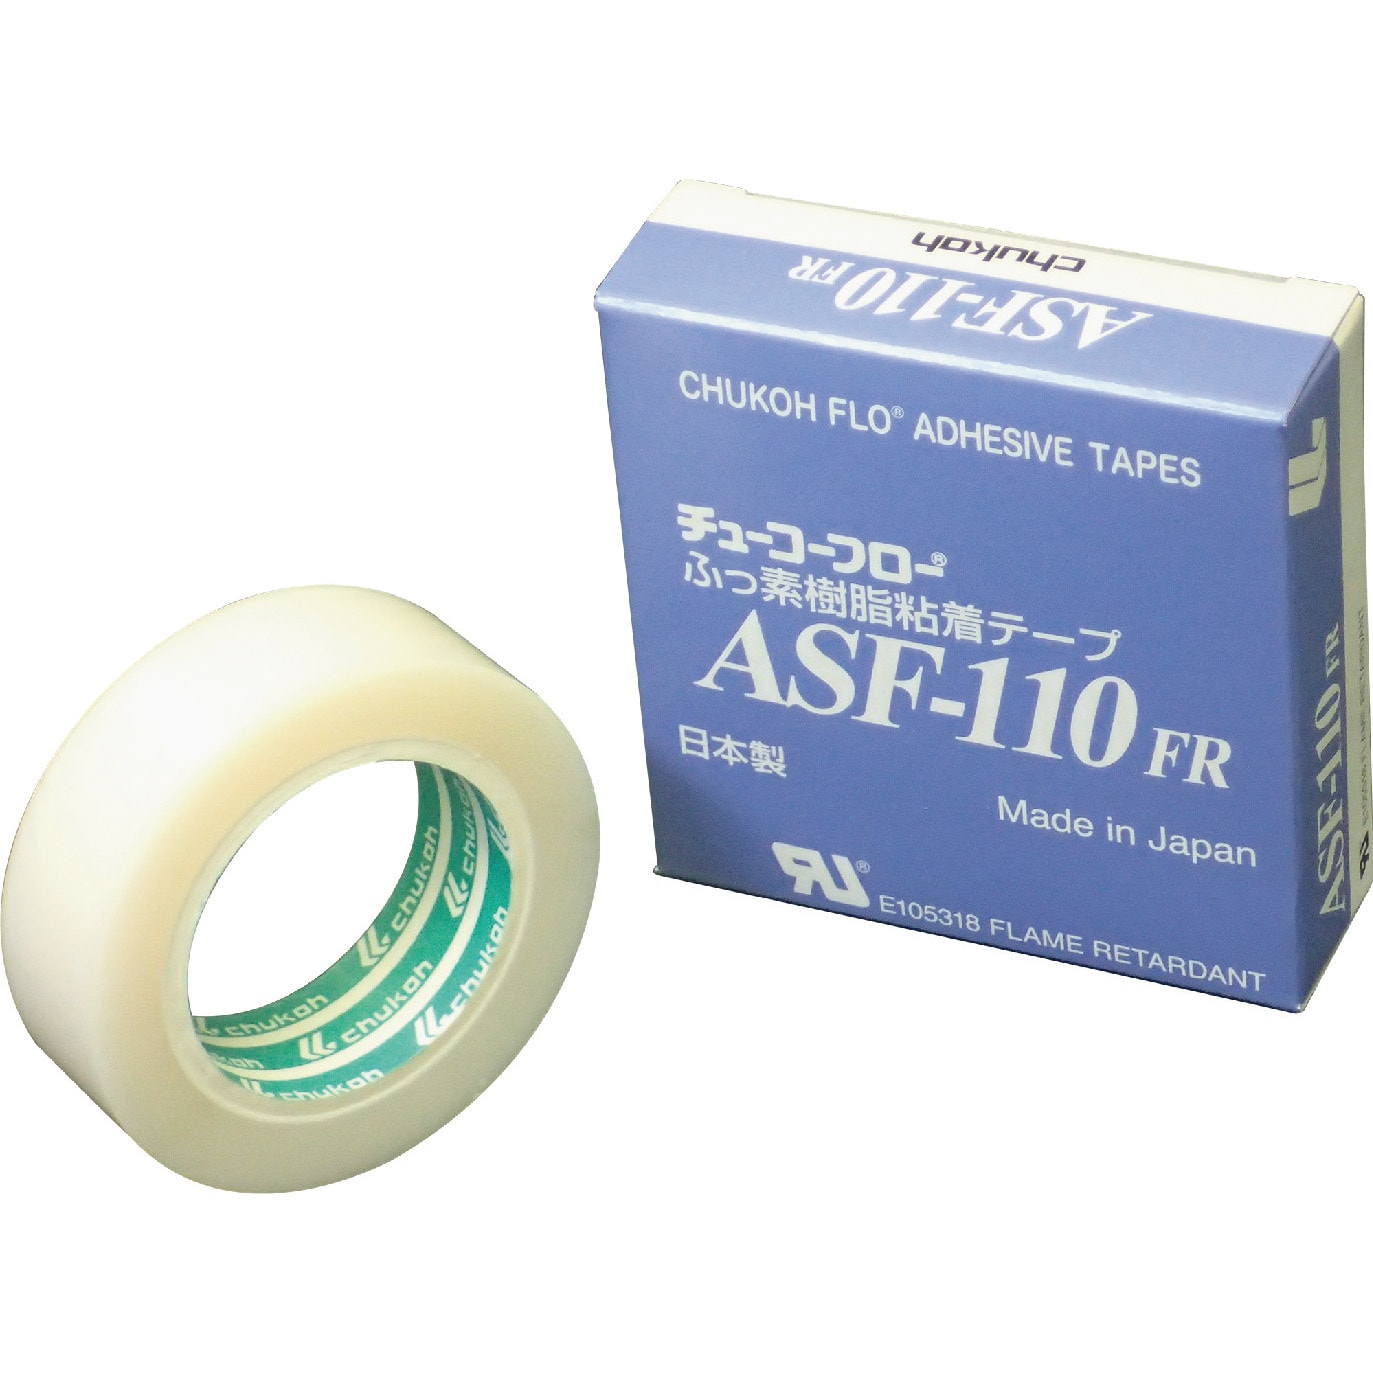 チューコーフロー フッ素樹脂フィルム粘着テープ ASFー110FR 0.18t×150w×10m ASF110FR-18X150 中興化成工業 - 1